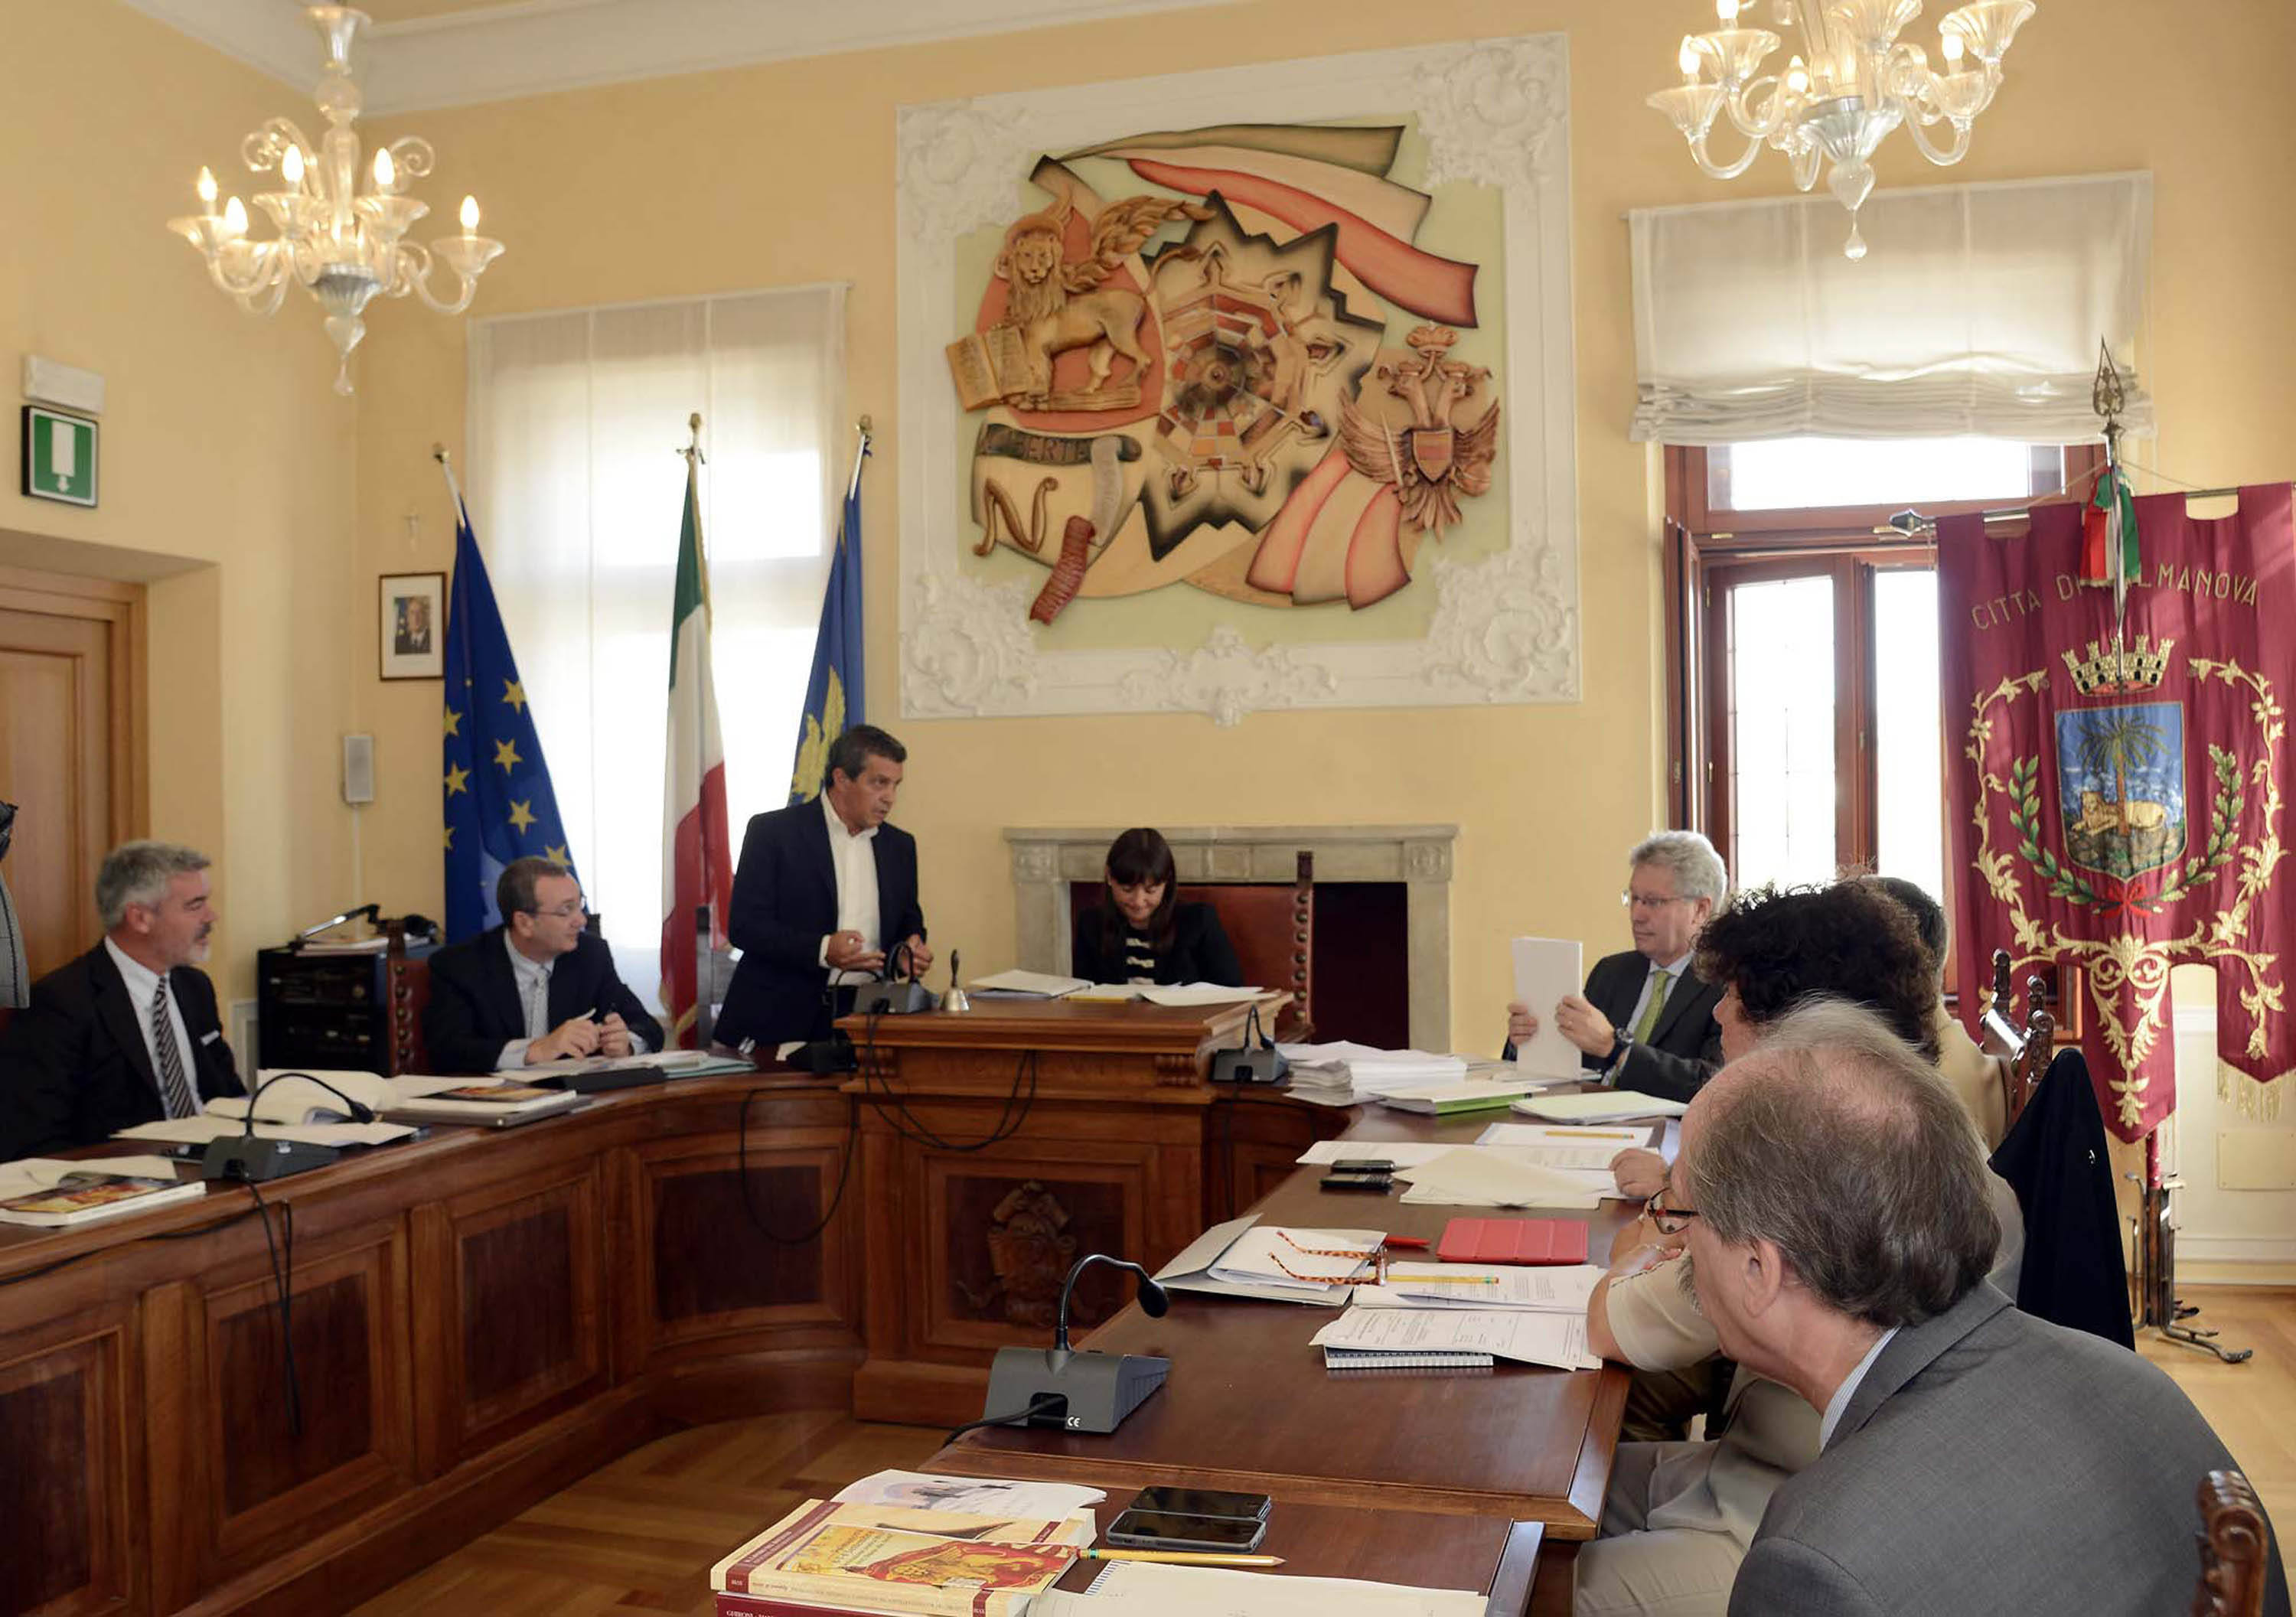 Debora Serracchiani (Presidente Friuli Venezia Giulia) e la Giunta regionale accolti da Francesco Martines (Sindaco Palmanova) in Municipio. (Palmanova 06/09/13)